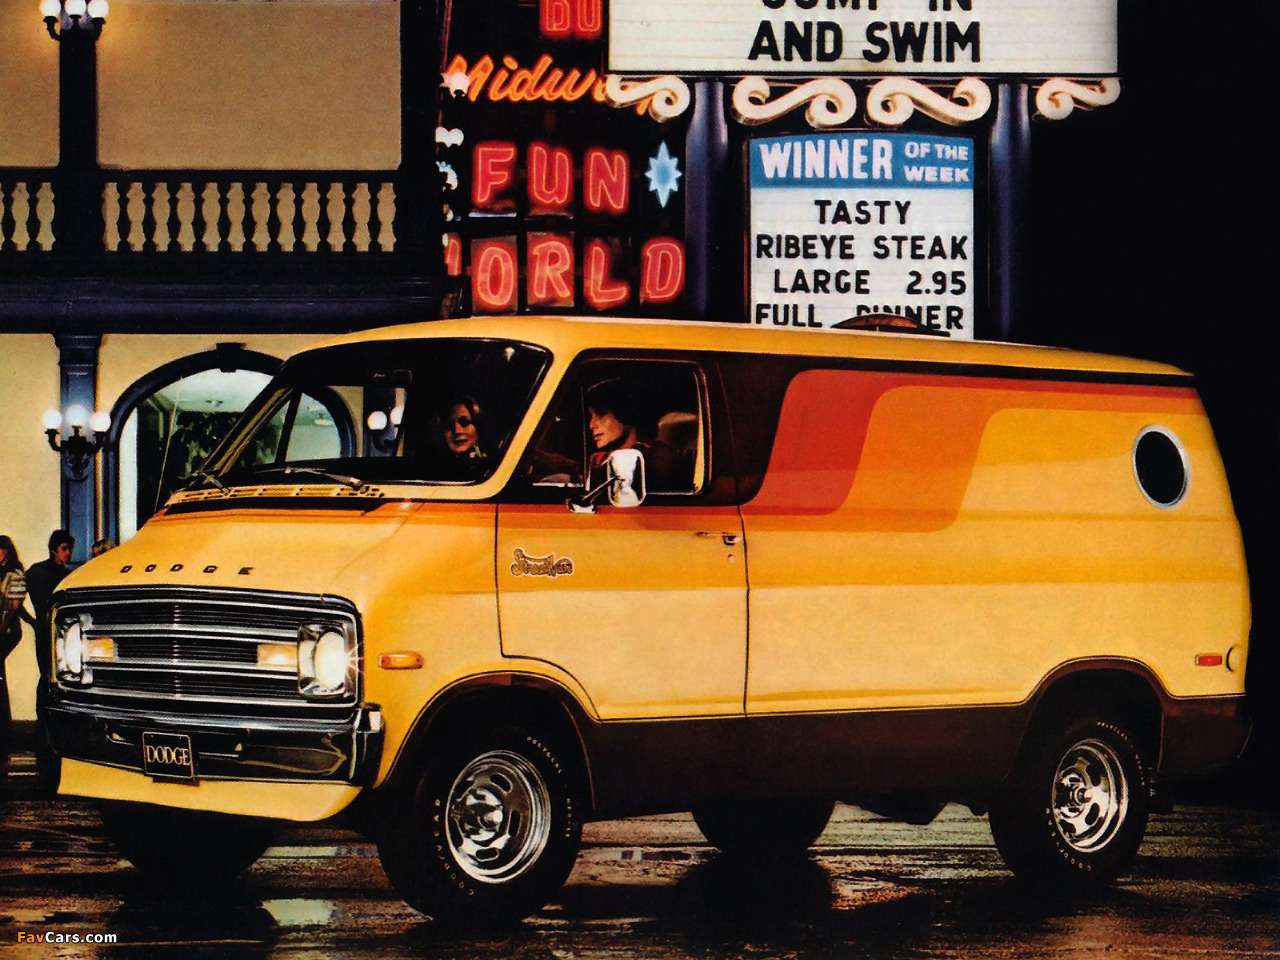 1976 Dodge Street Van online puzzle